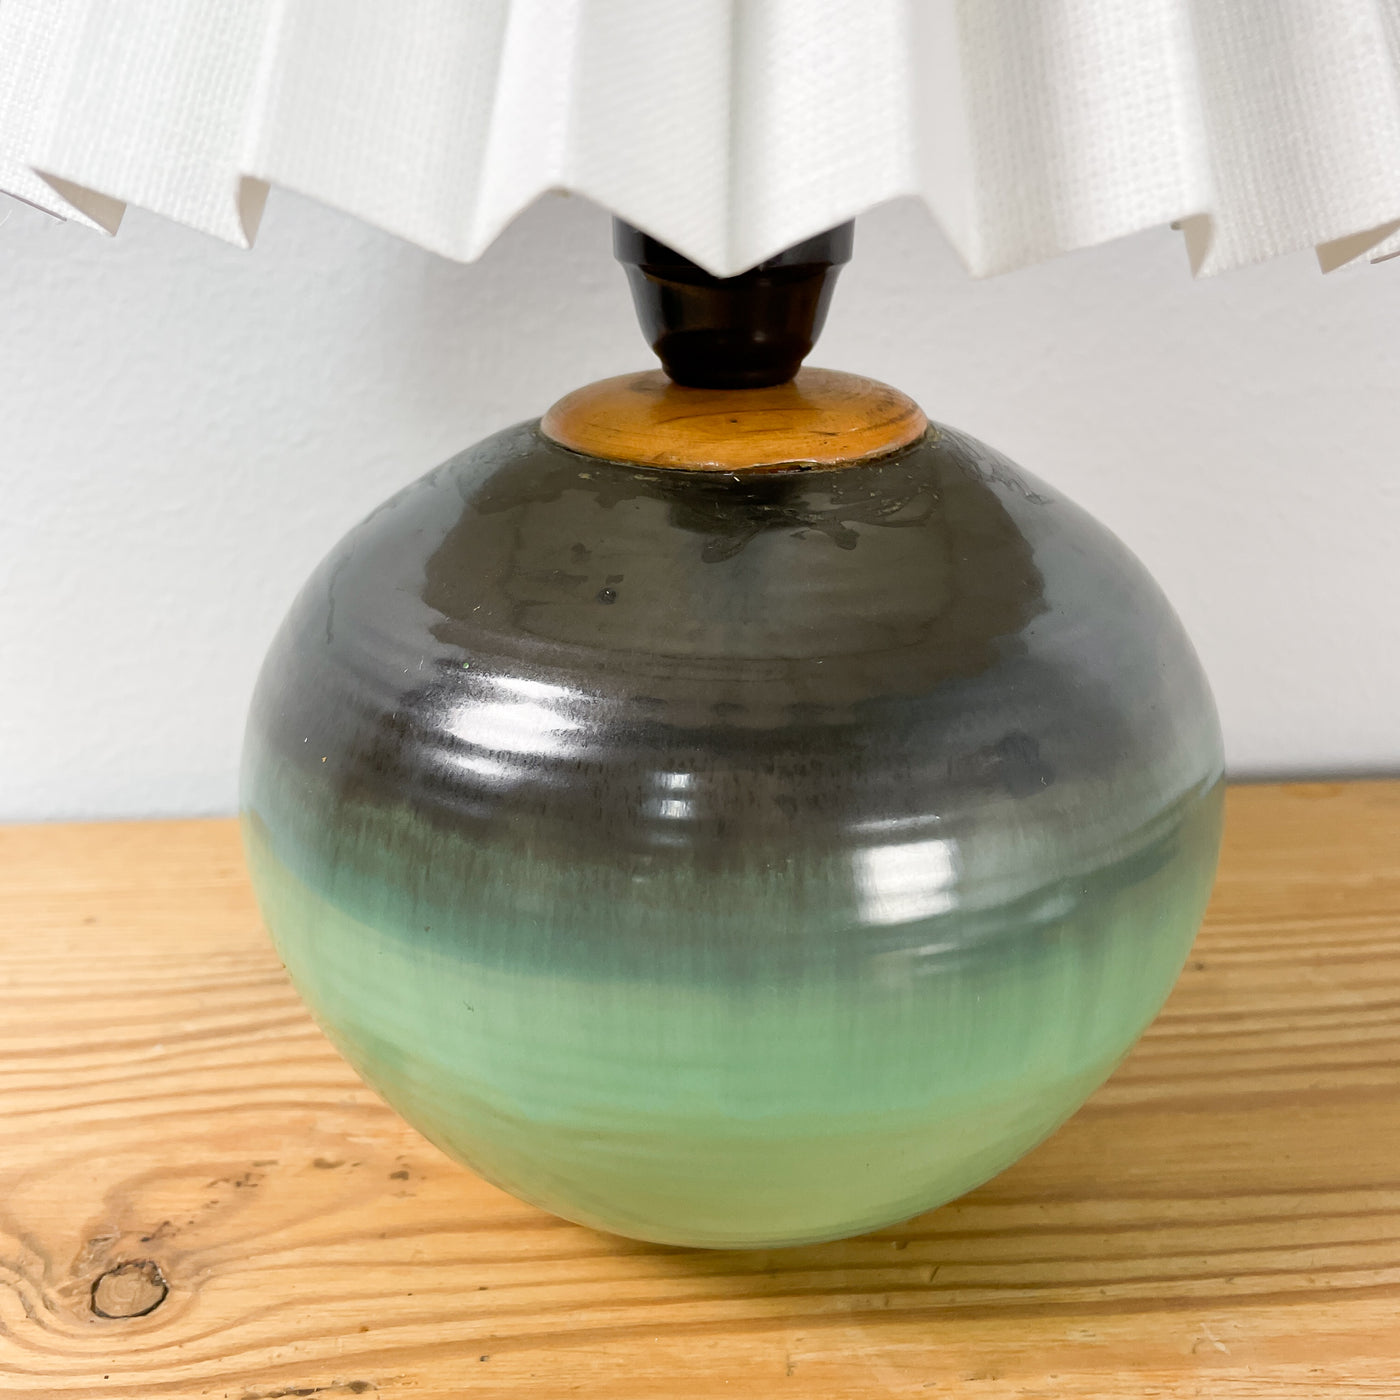 Ekeby bordslampa i keramik